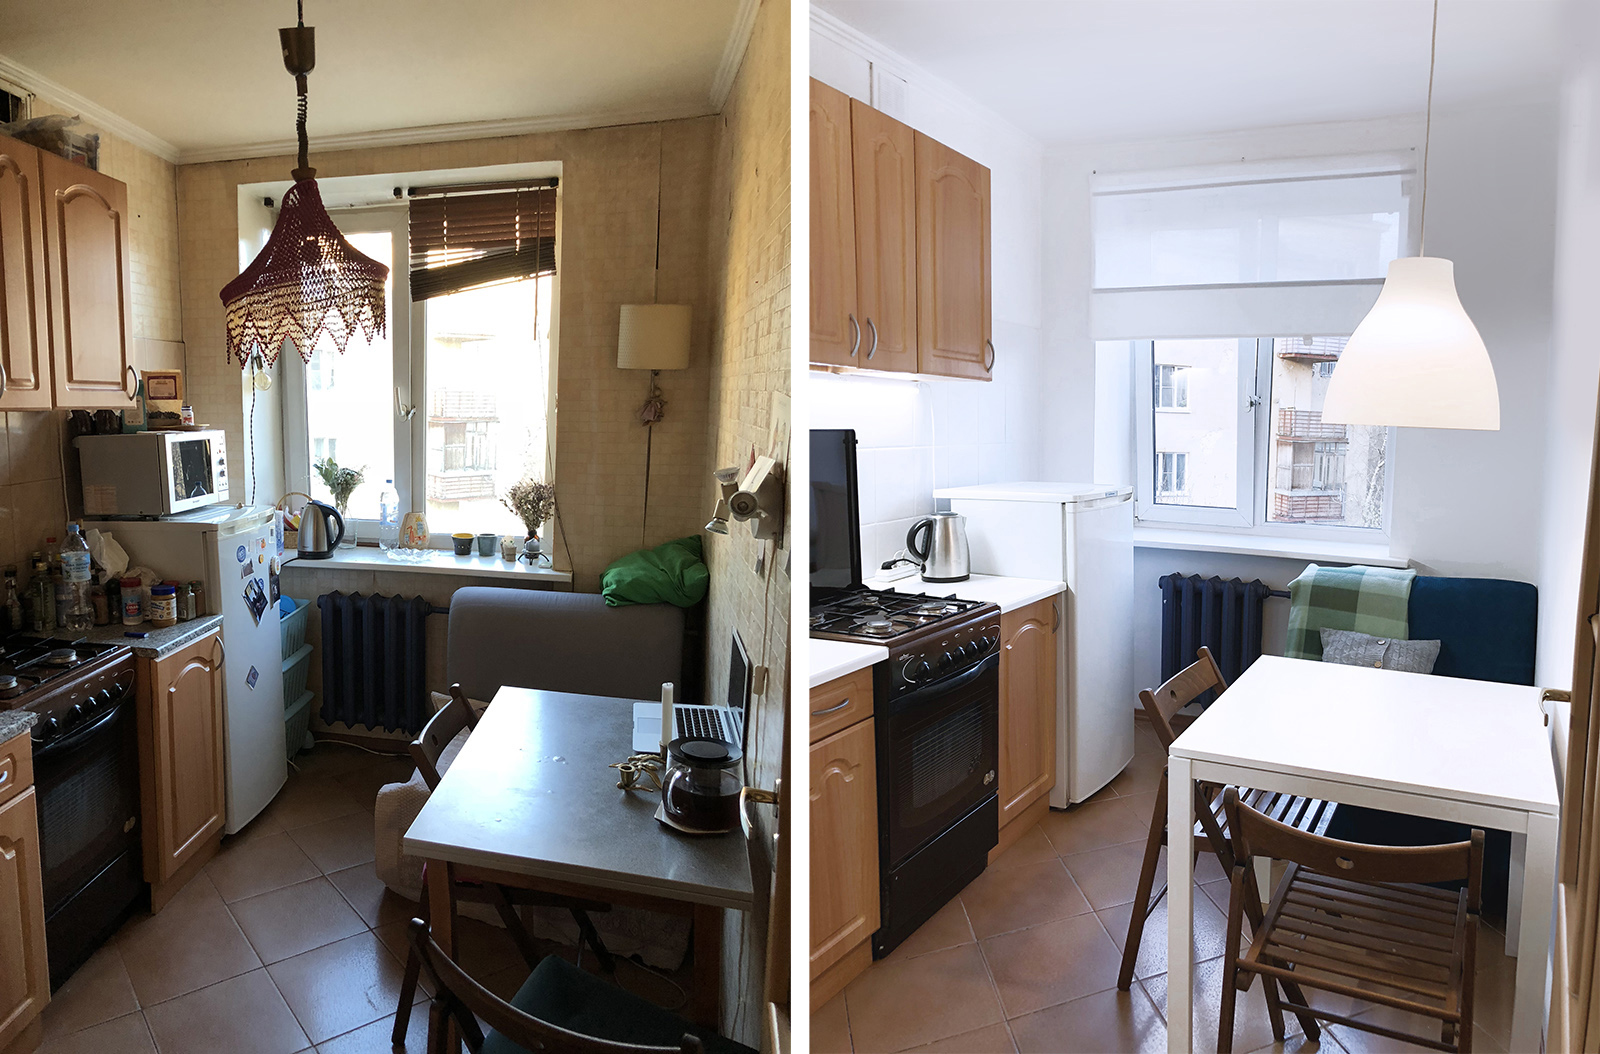 Ремонт старой кухни. Хоум стейджинг в хрущевке. Хоум стейджинг квартиры до и после. Кухня в старой квартире. Переделка старой квартиры.